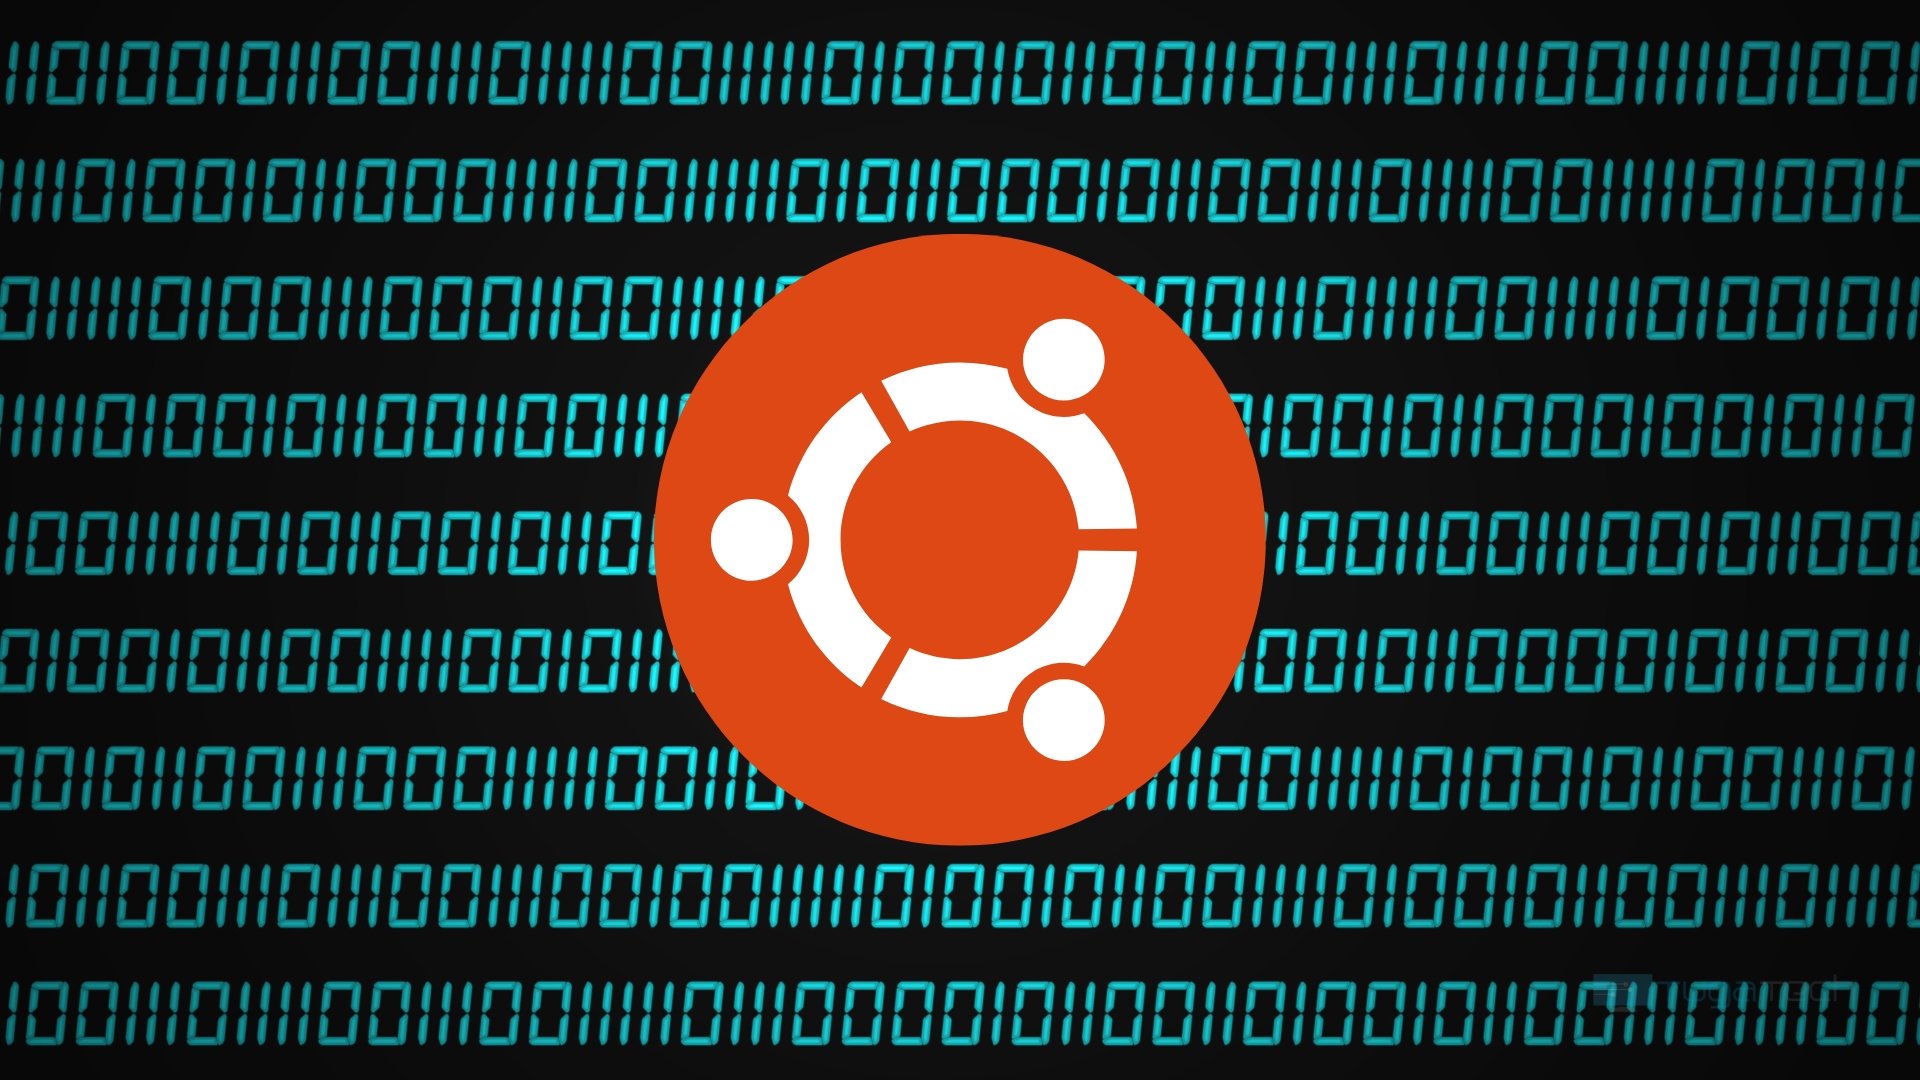 Logo do ubuntu com codigo fonte em fundo